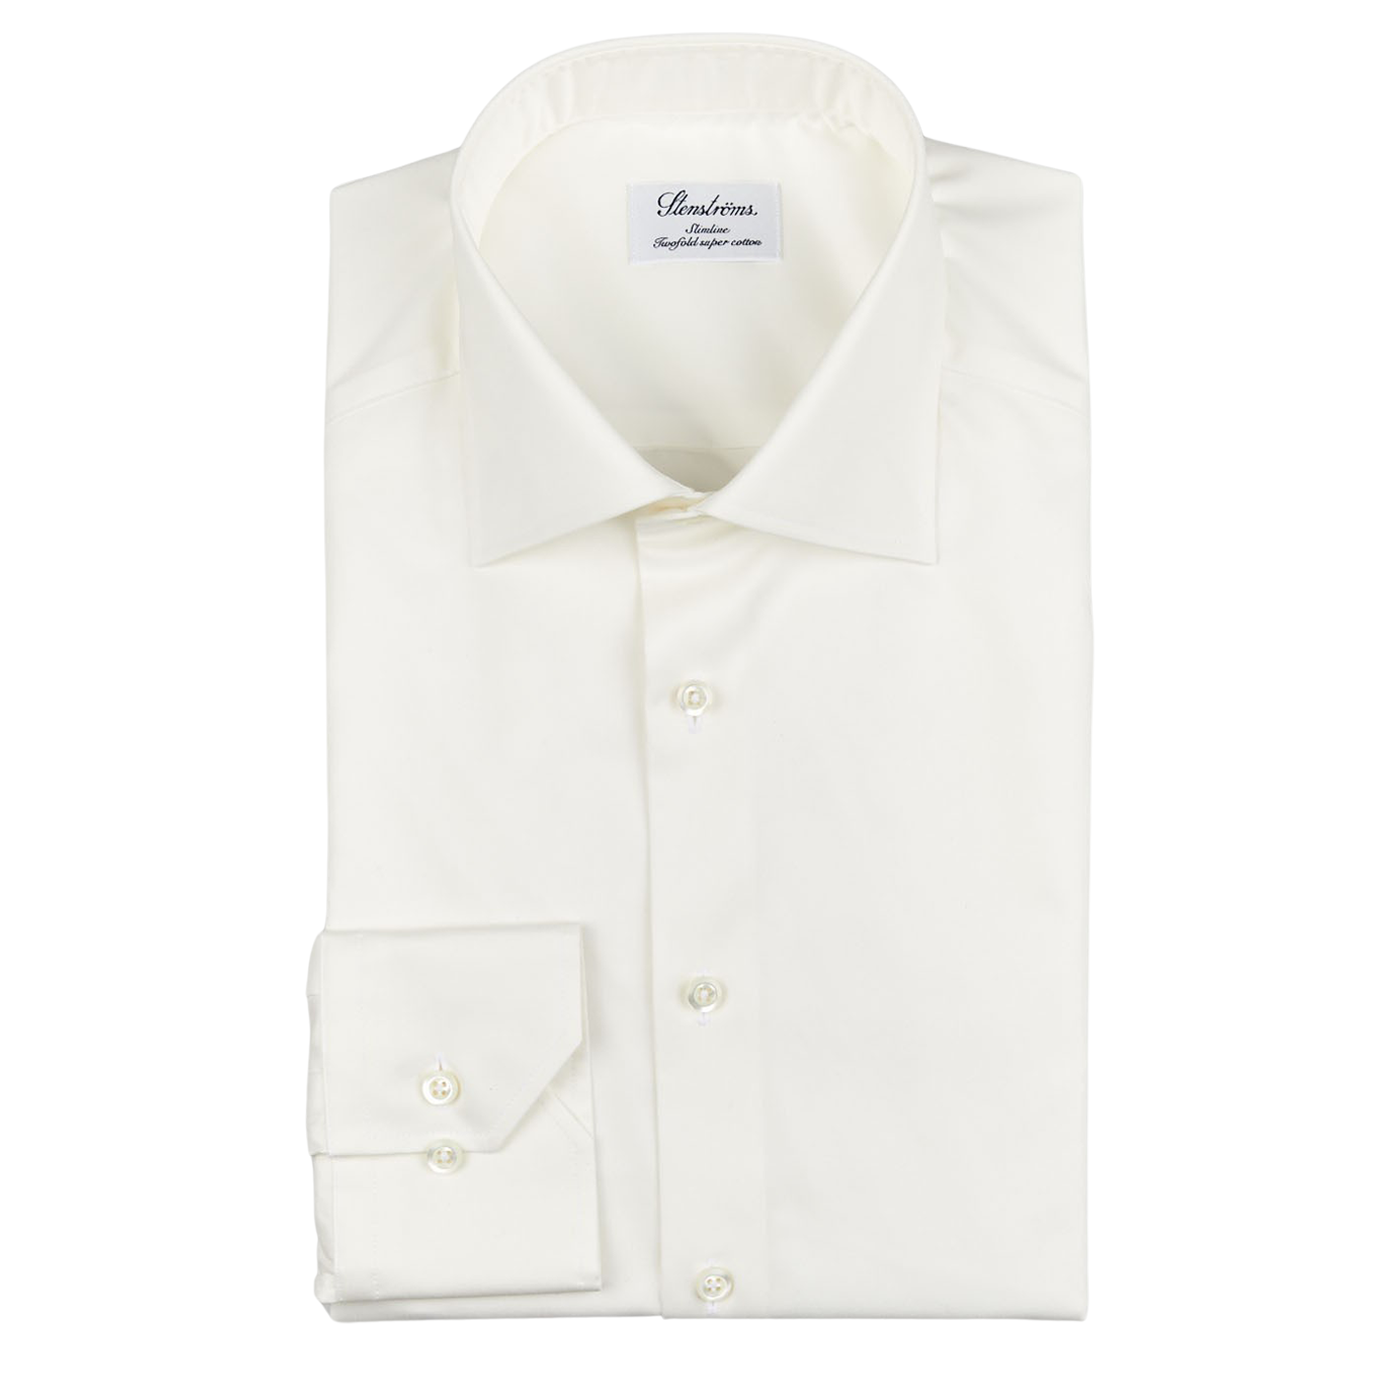 A Stenströms Off-White Cotton Twill Slimline Shirt on a white background.